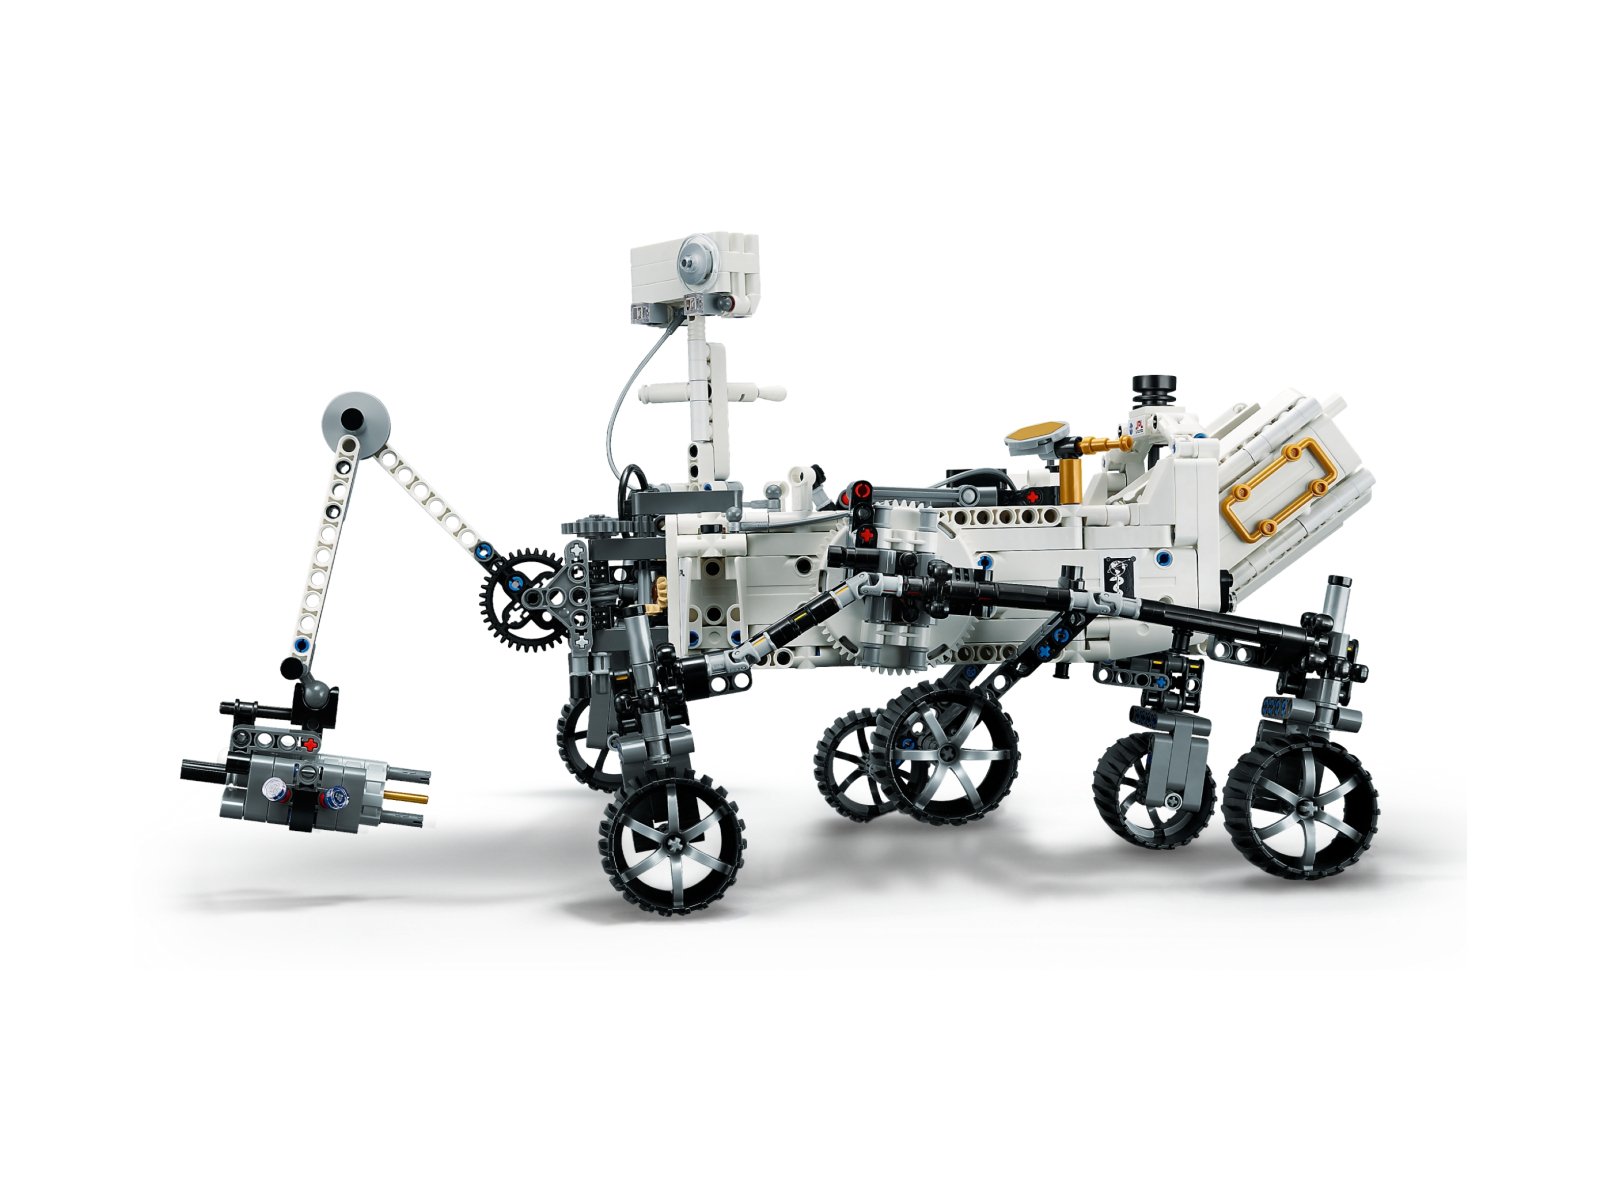 LEGO 42158 NASA Mars Rover Perseverance